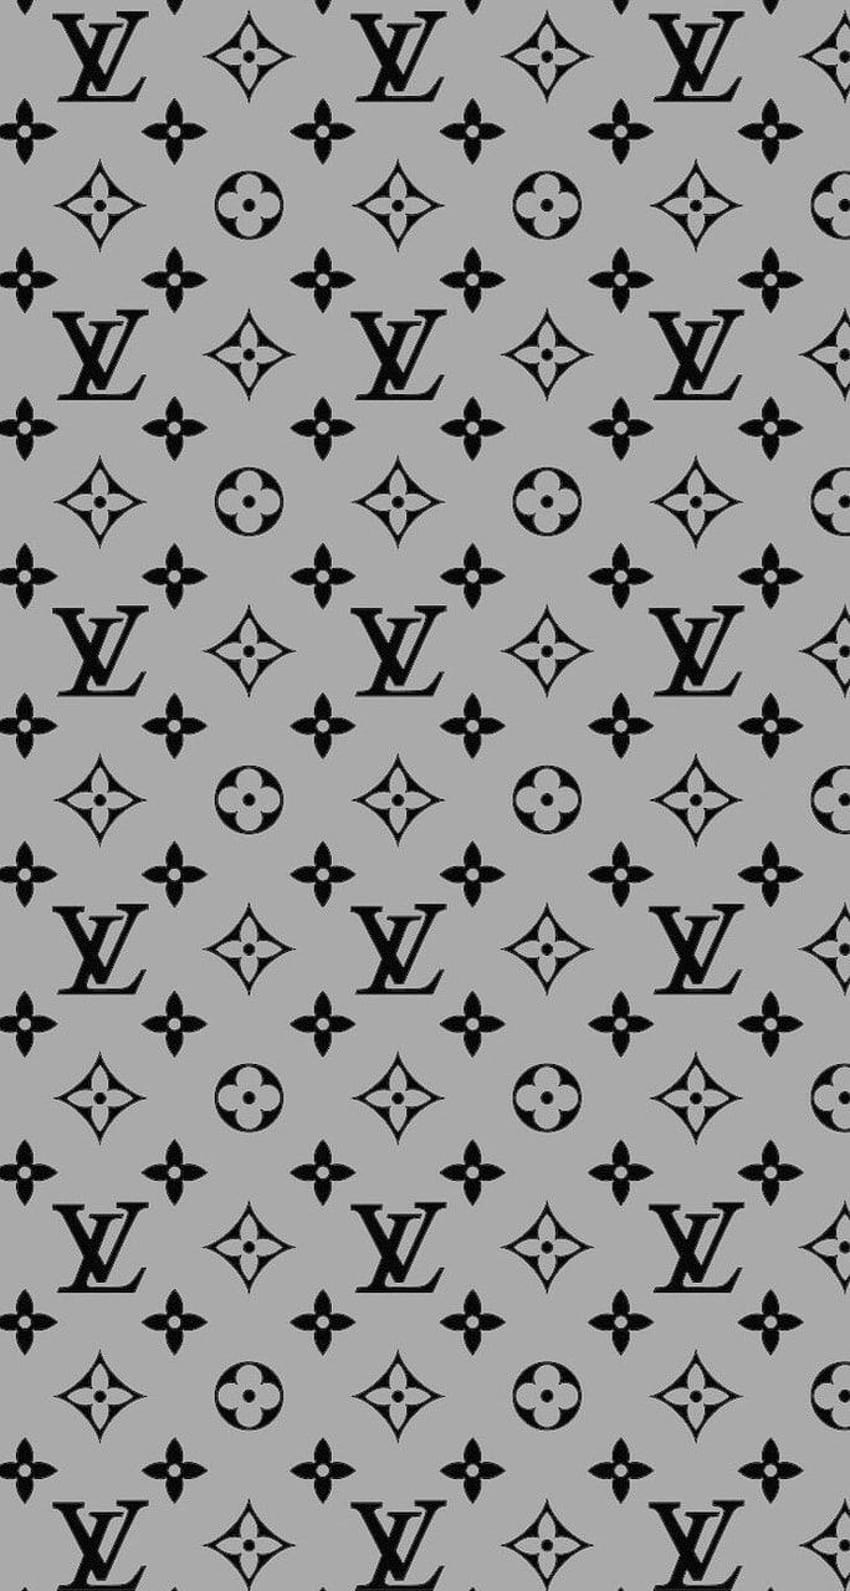 Louis Vuitton Aesthetic Background - 2021  Fondos de pantalla para ipad,  Fondo de pantalla de manzana, Fondos de gravity falls